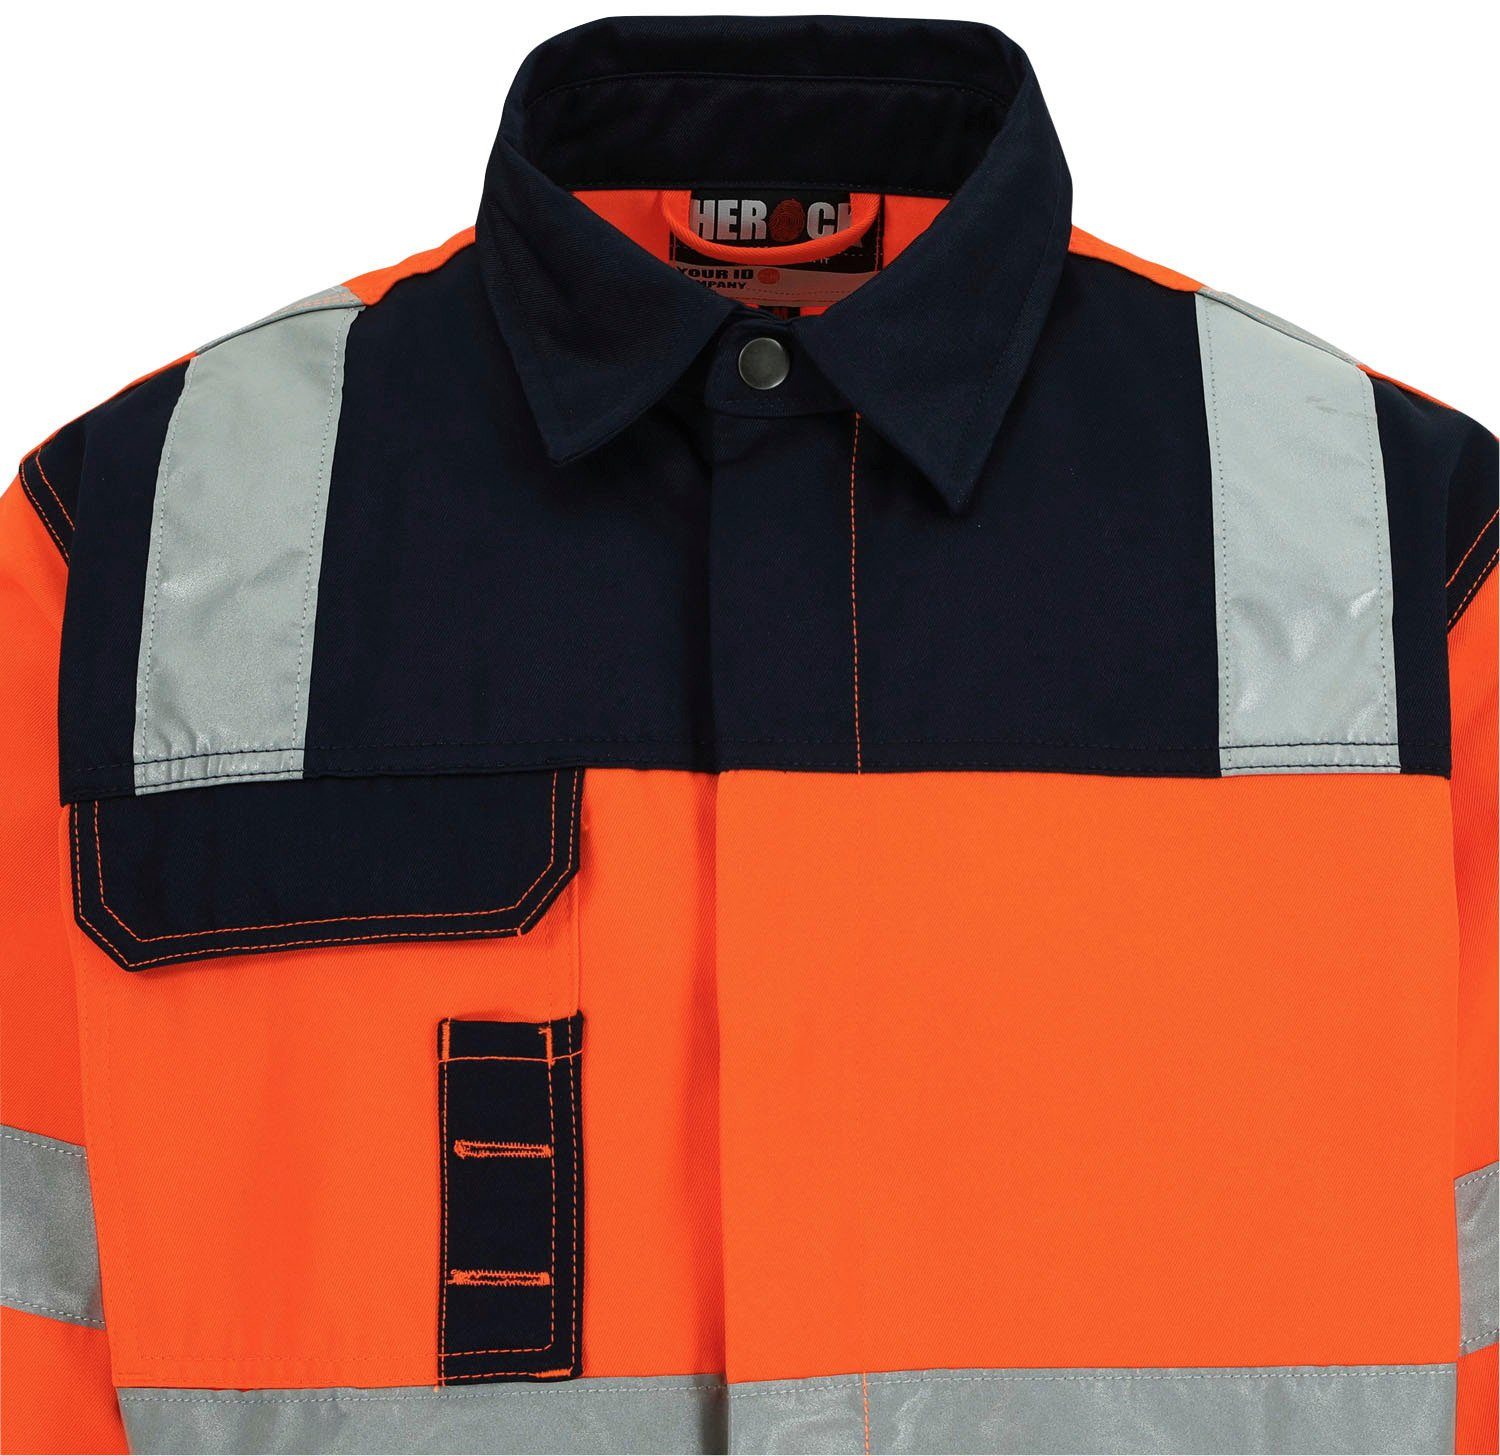 Arbeitsjacke Jacke Hochsichtbar orange Herock 5 5cm reflektierende Taschen, eintellbare Hochwertig, Hydros Bündchen, Bänder